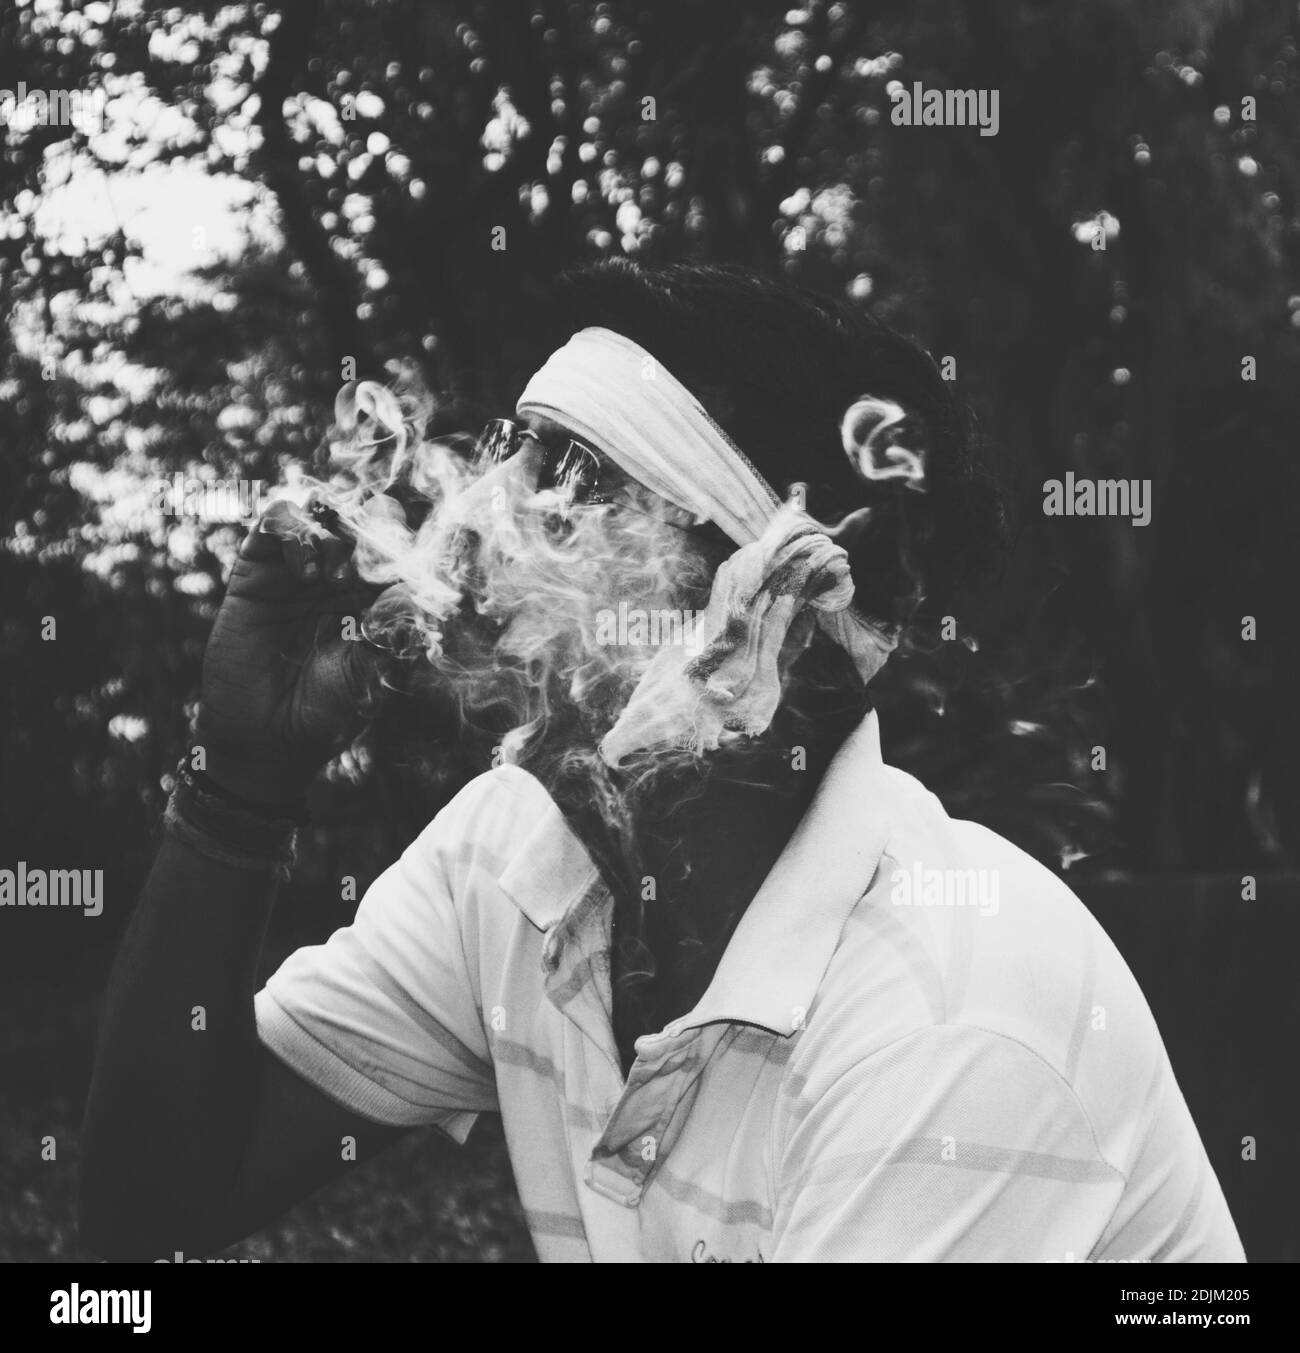 Vista lateral del Hombre Fumando Cigarrillo contra los árboles Foto de stock